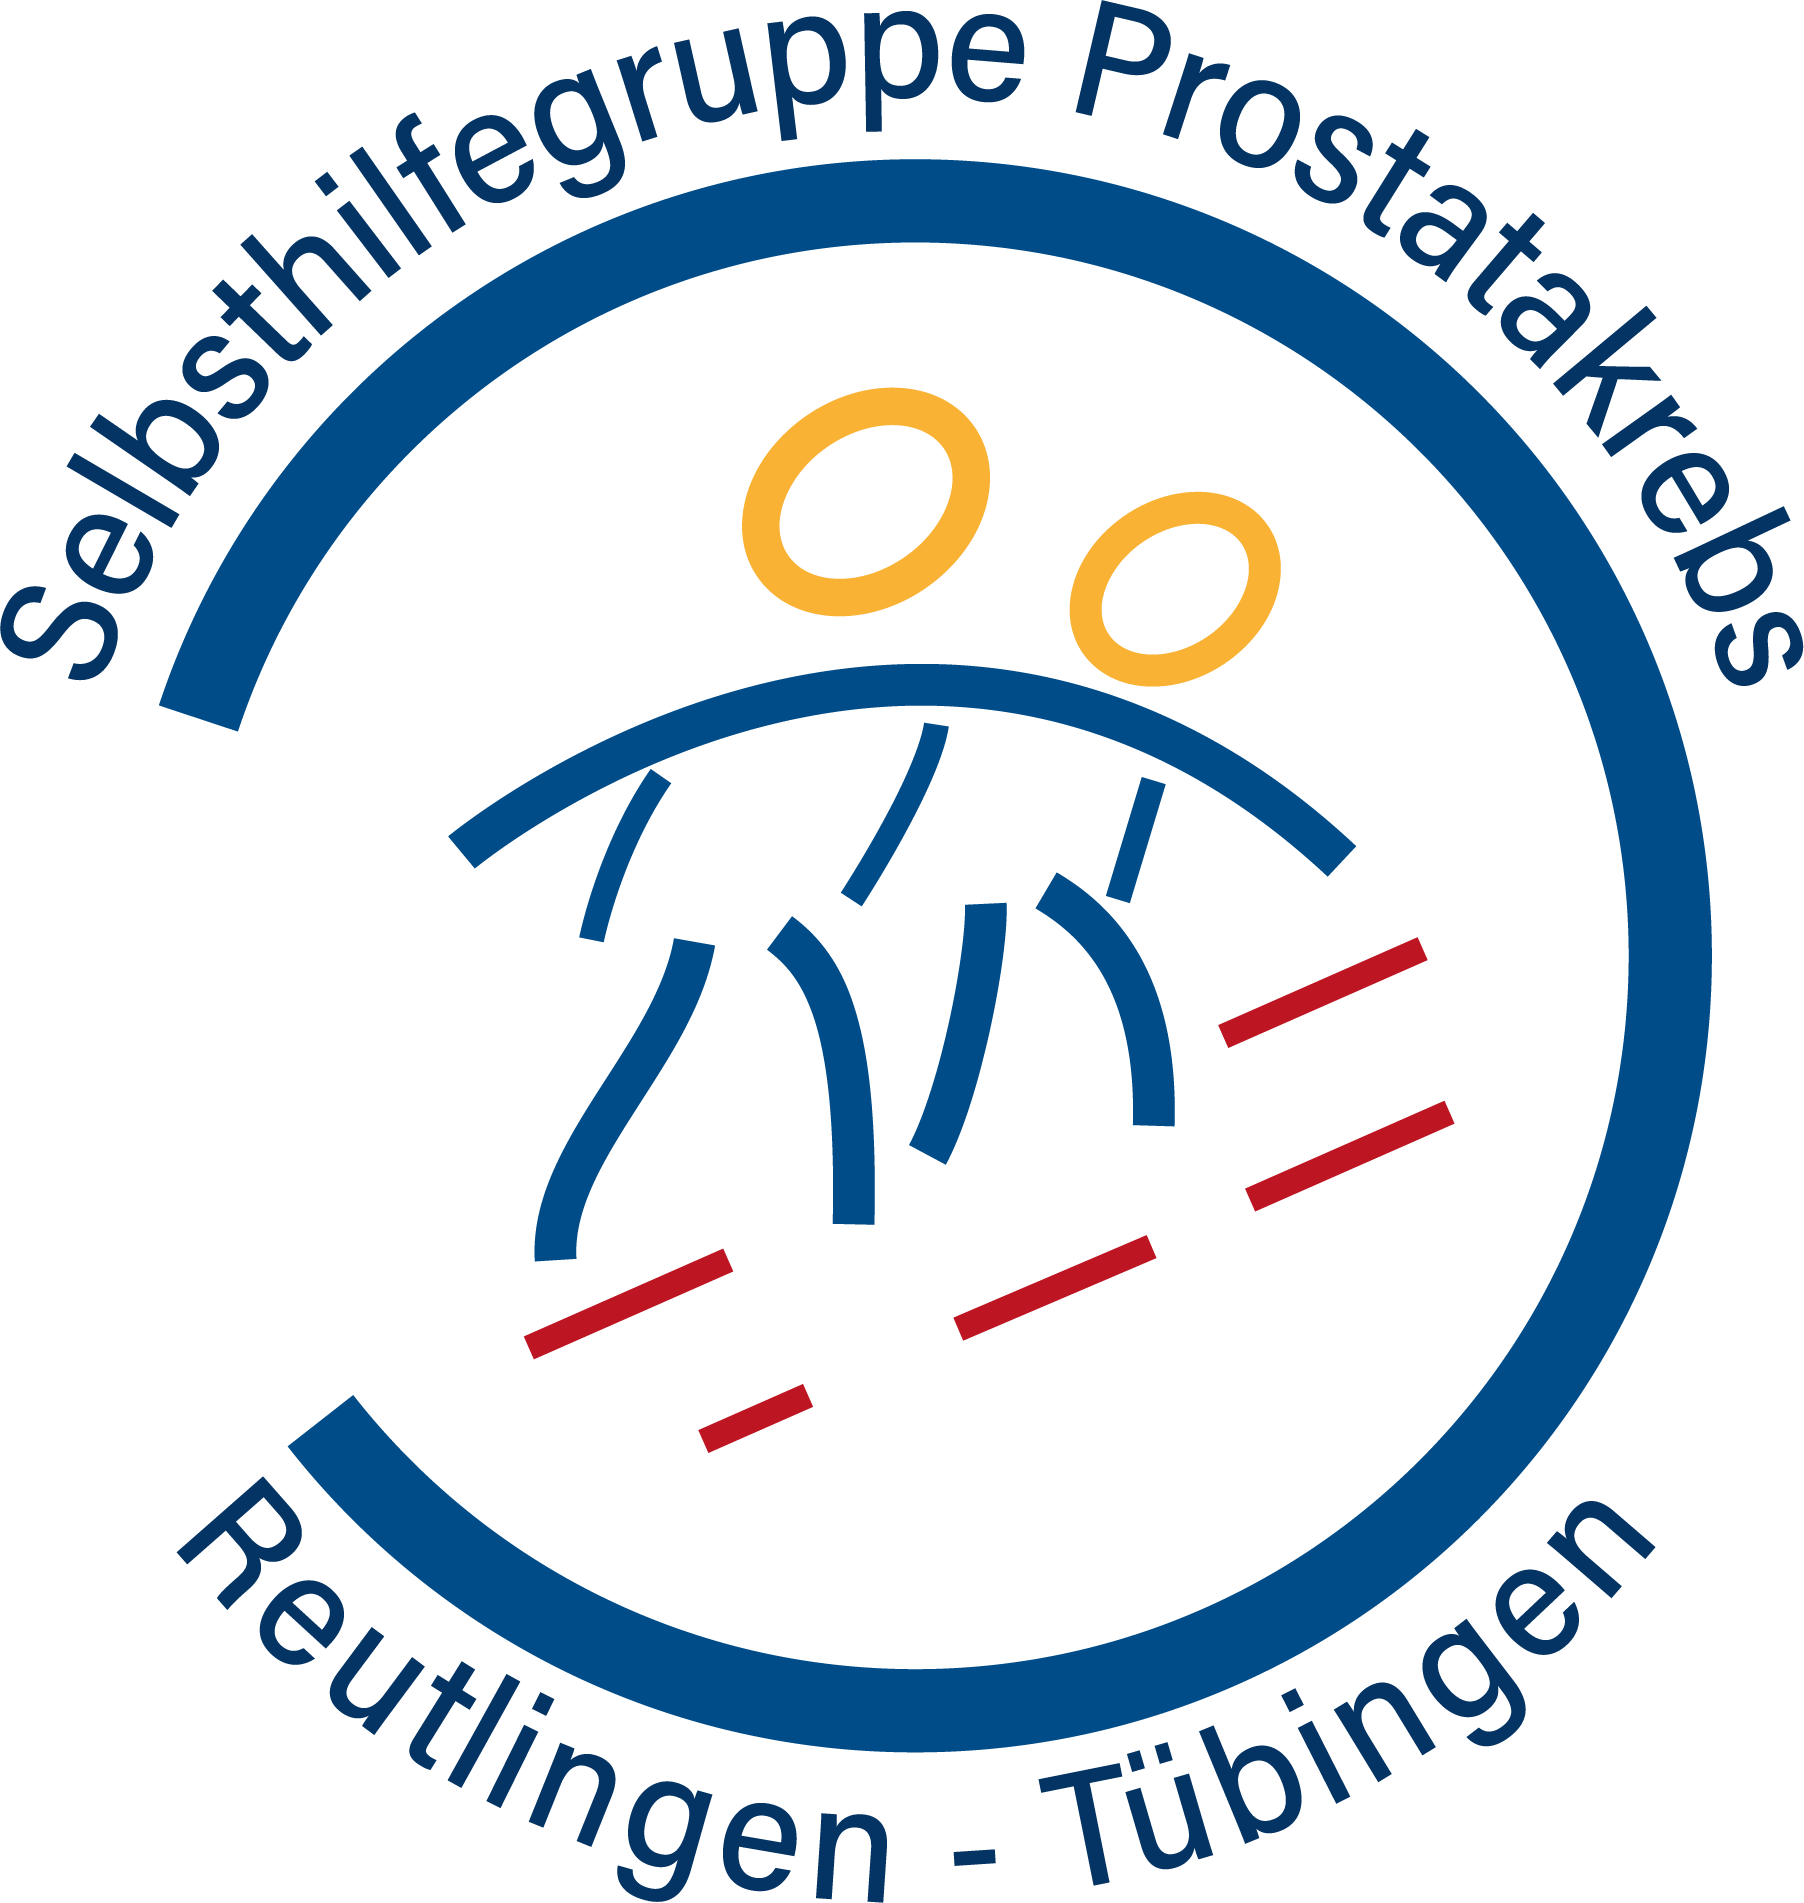 Selbsthilfegruppe Prostatakrebs Reutlingen-Tübingen e.V. 